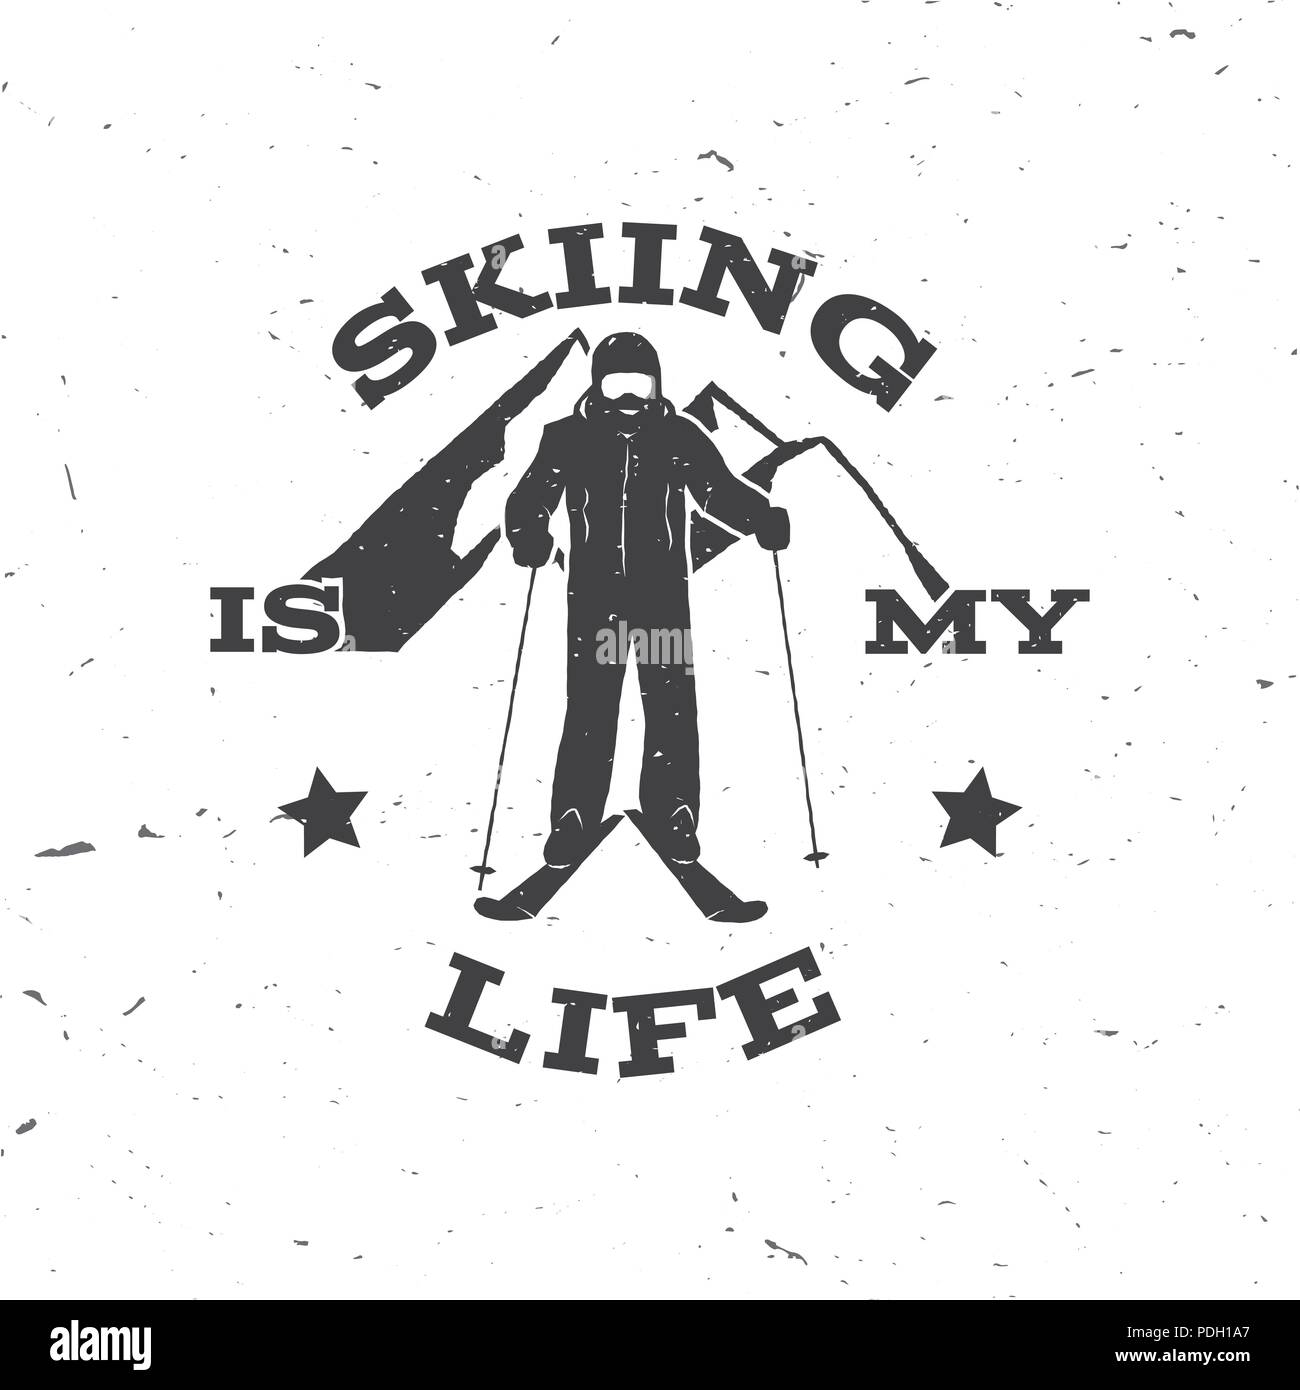 Le ski, c'est ma vie. Concept pour le badge, shirt, impression, sceau ou cachet. Ski Club typographie design- stock vector. Illustration de Vecteur